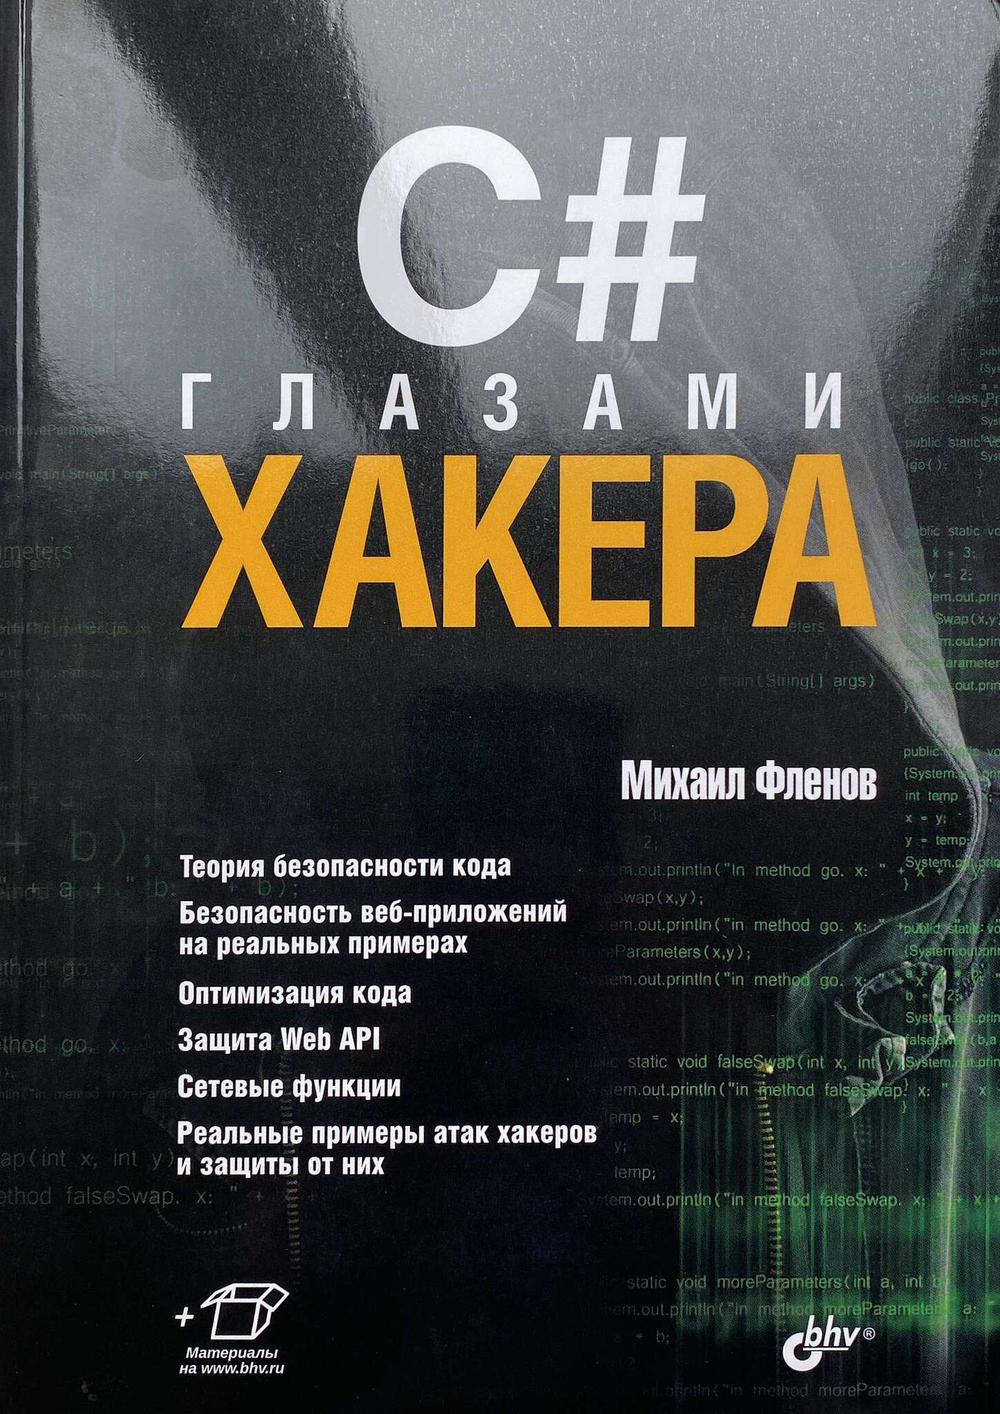 Книга: Фленов М. "C# глазами хакера"